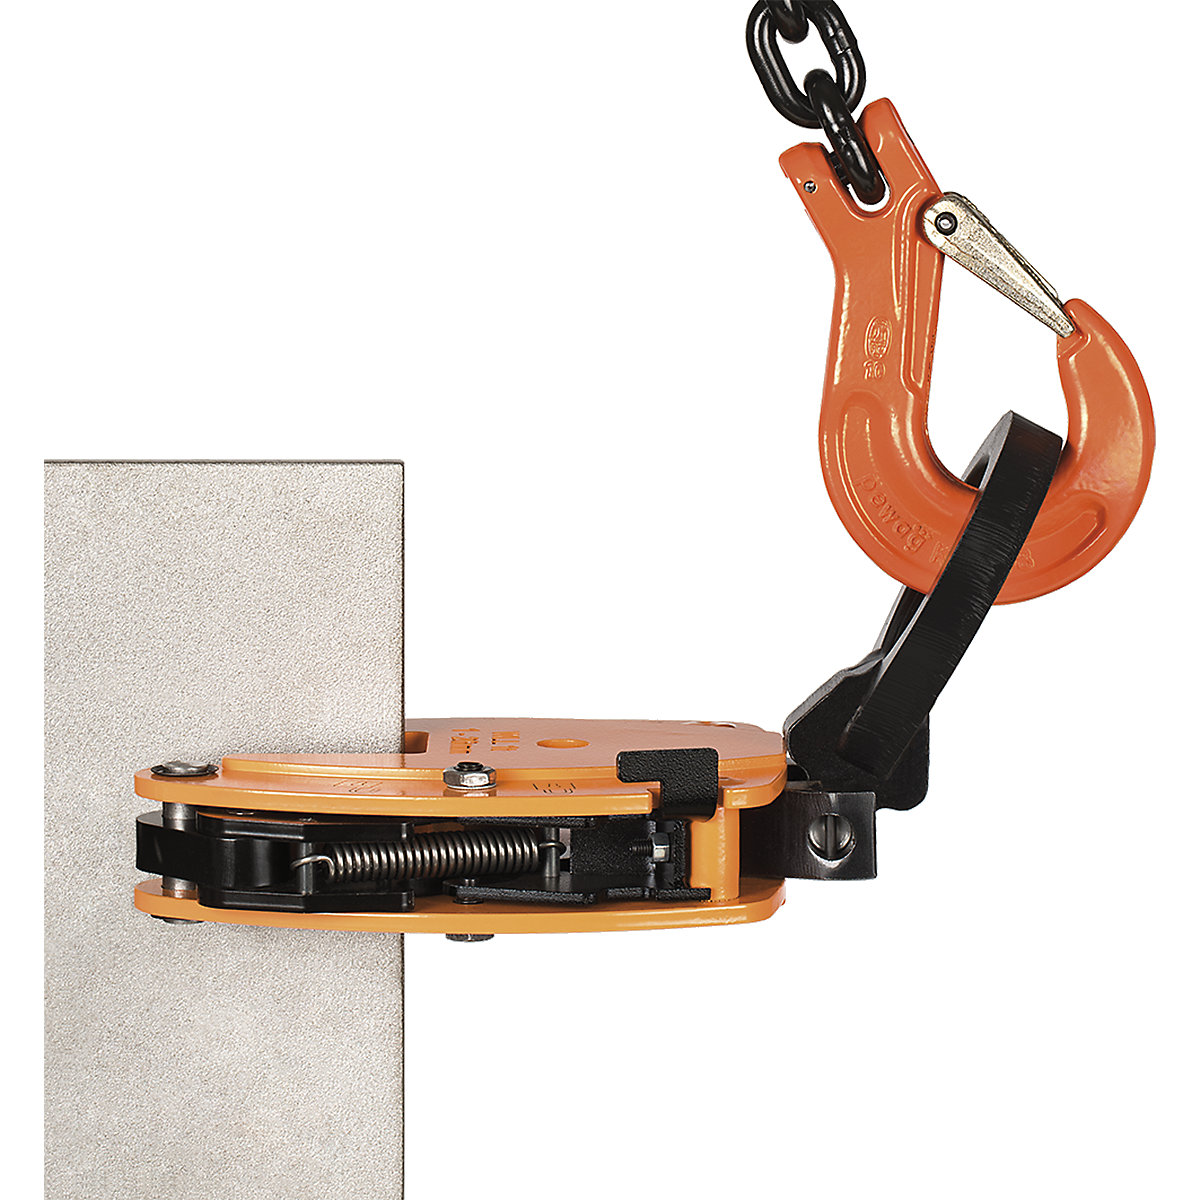 Stezaljka za nošenje, model KL, okomita uporaba – Pfeifer (Prikaz proizvoda 3)